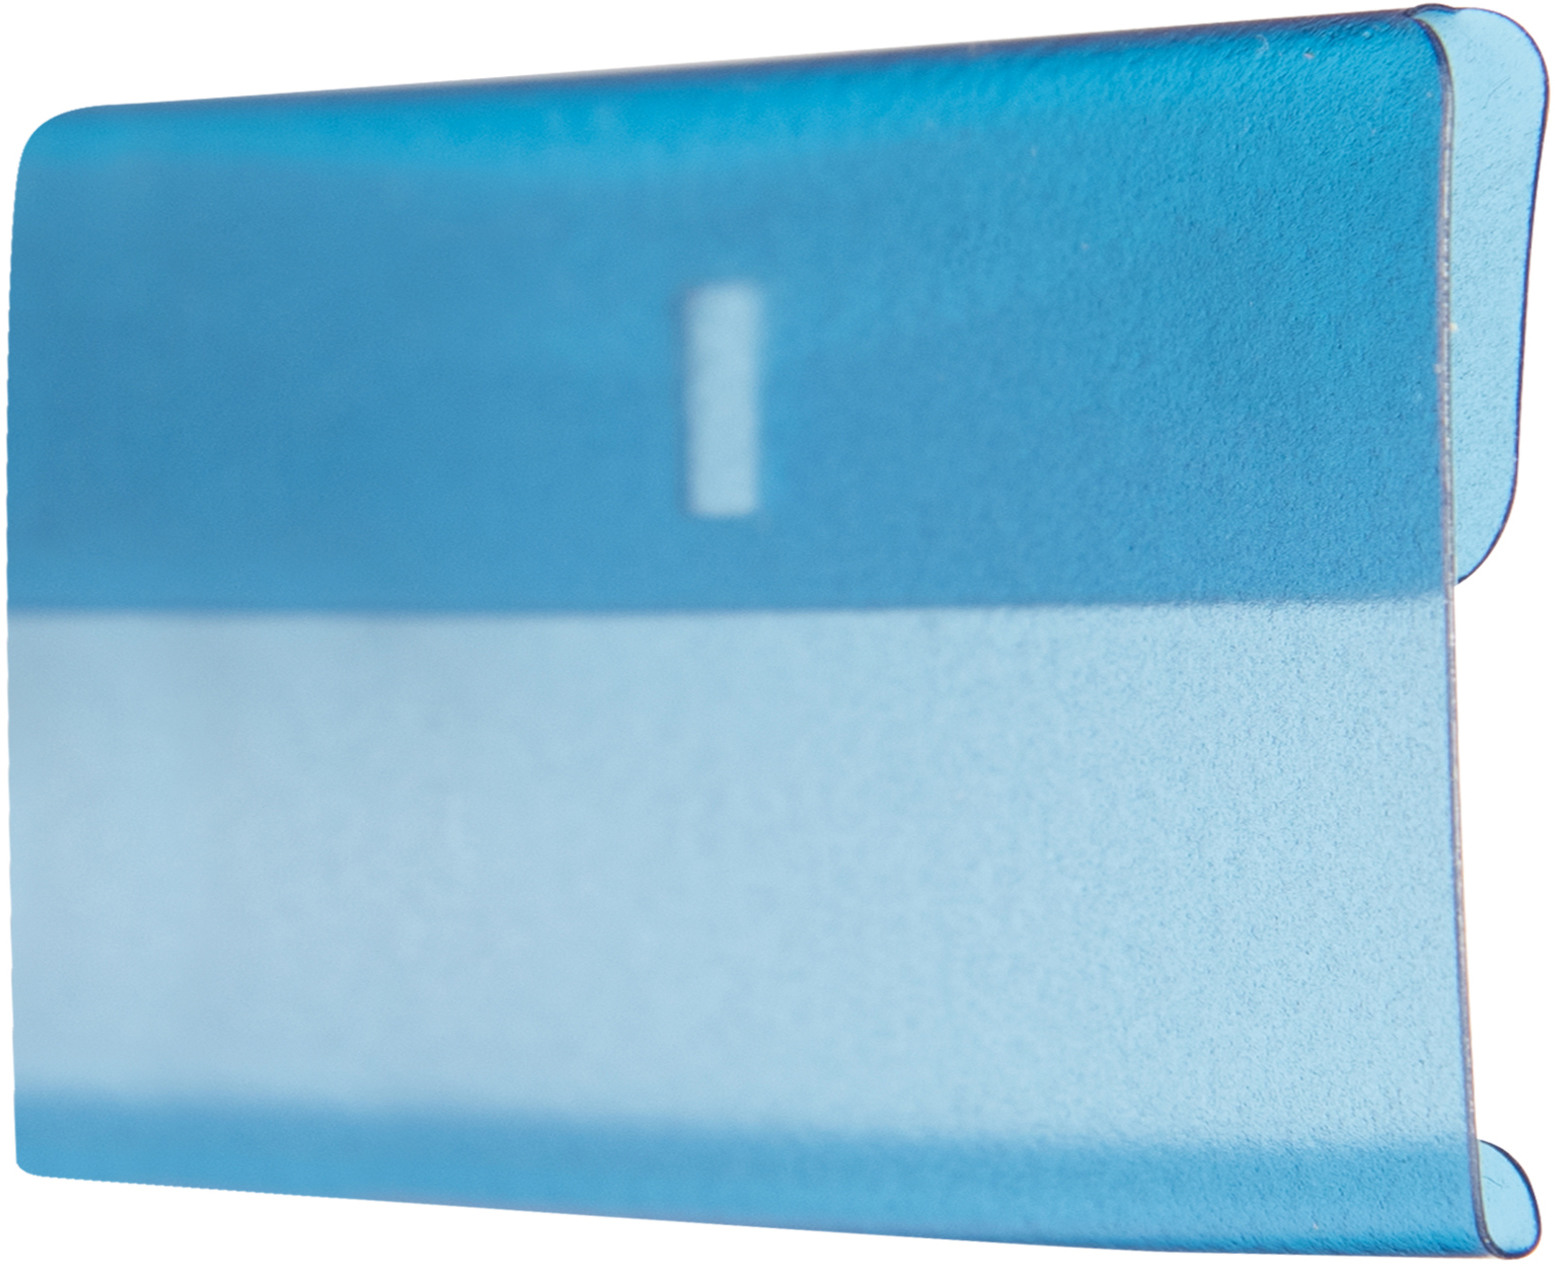 BIELLA Manchons transparent 60x30mm 27360205U bleu 25 pcs.